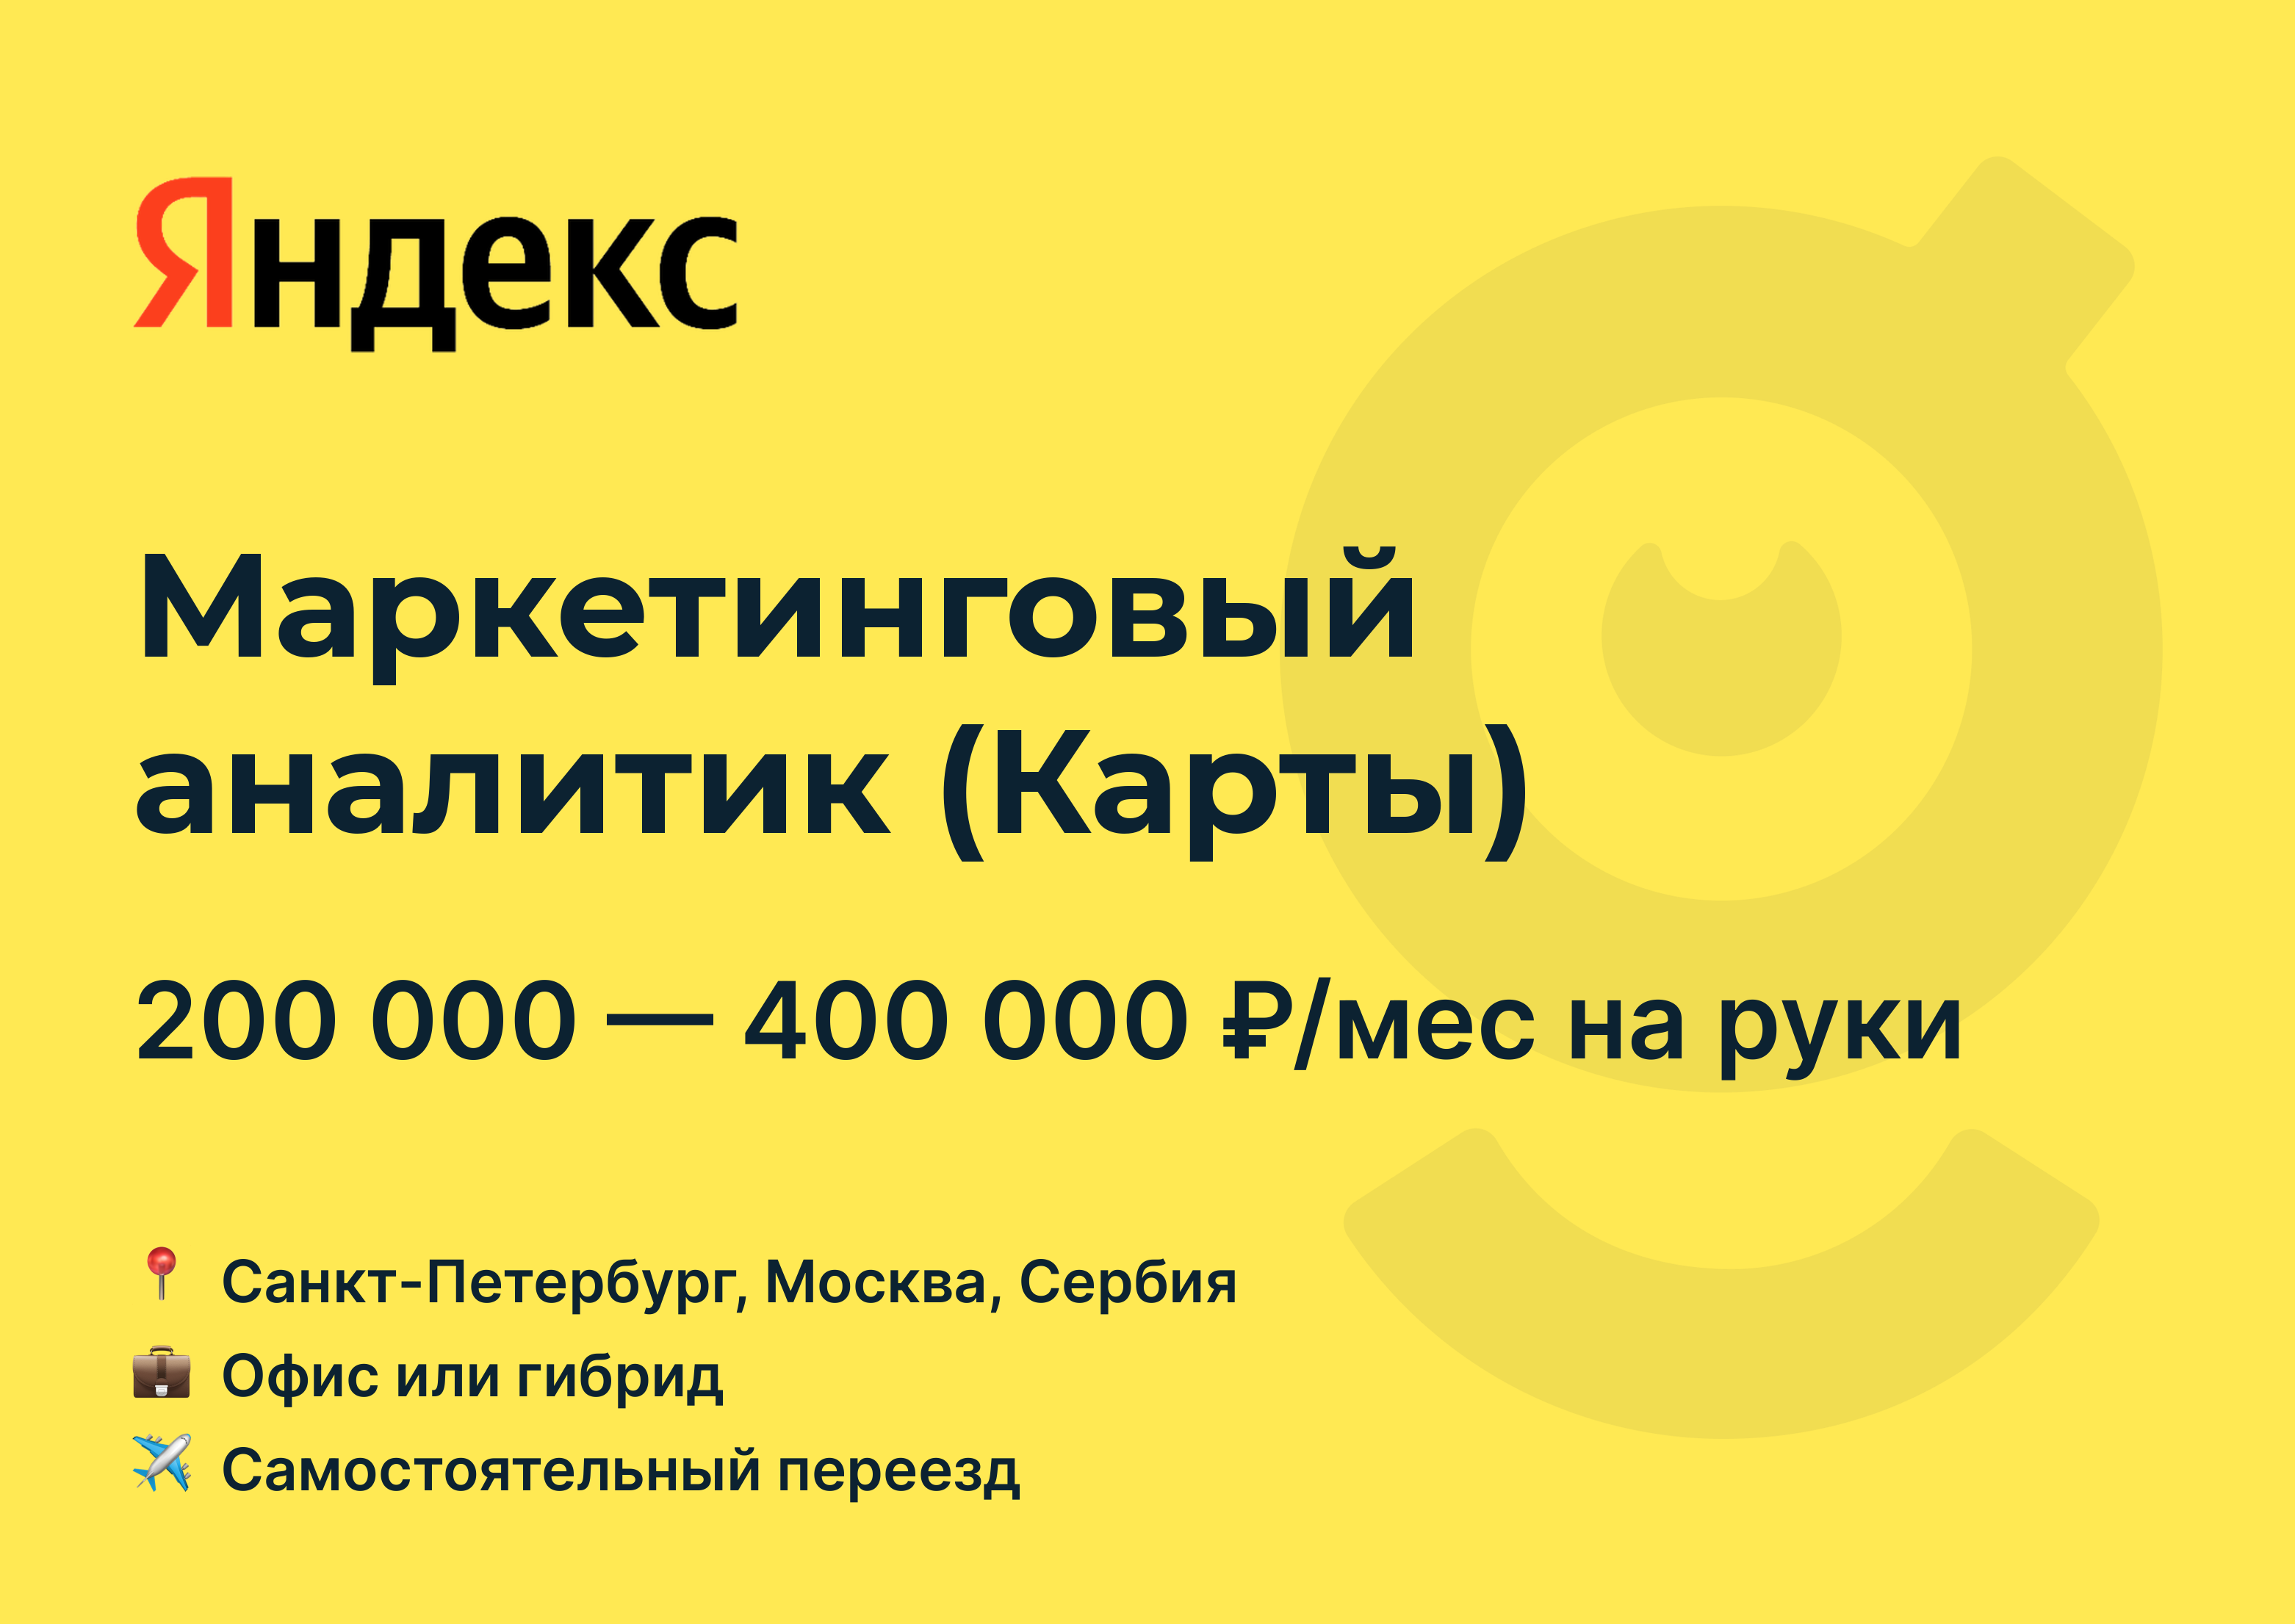 Маркетинговые вакансии. Сервисы Яндекса вертикали.